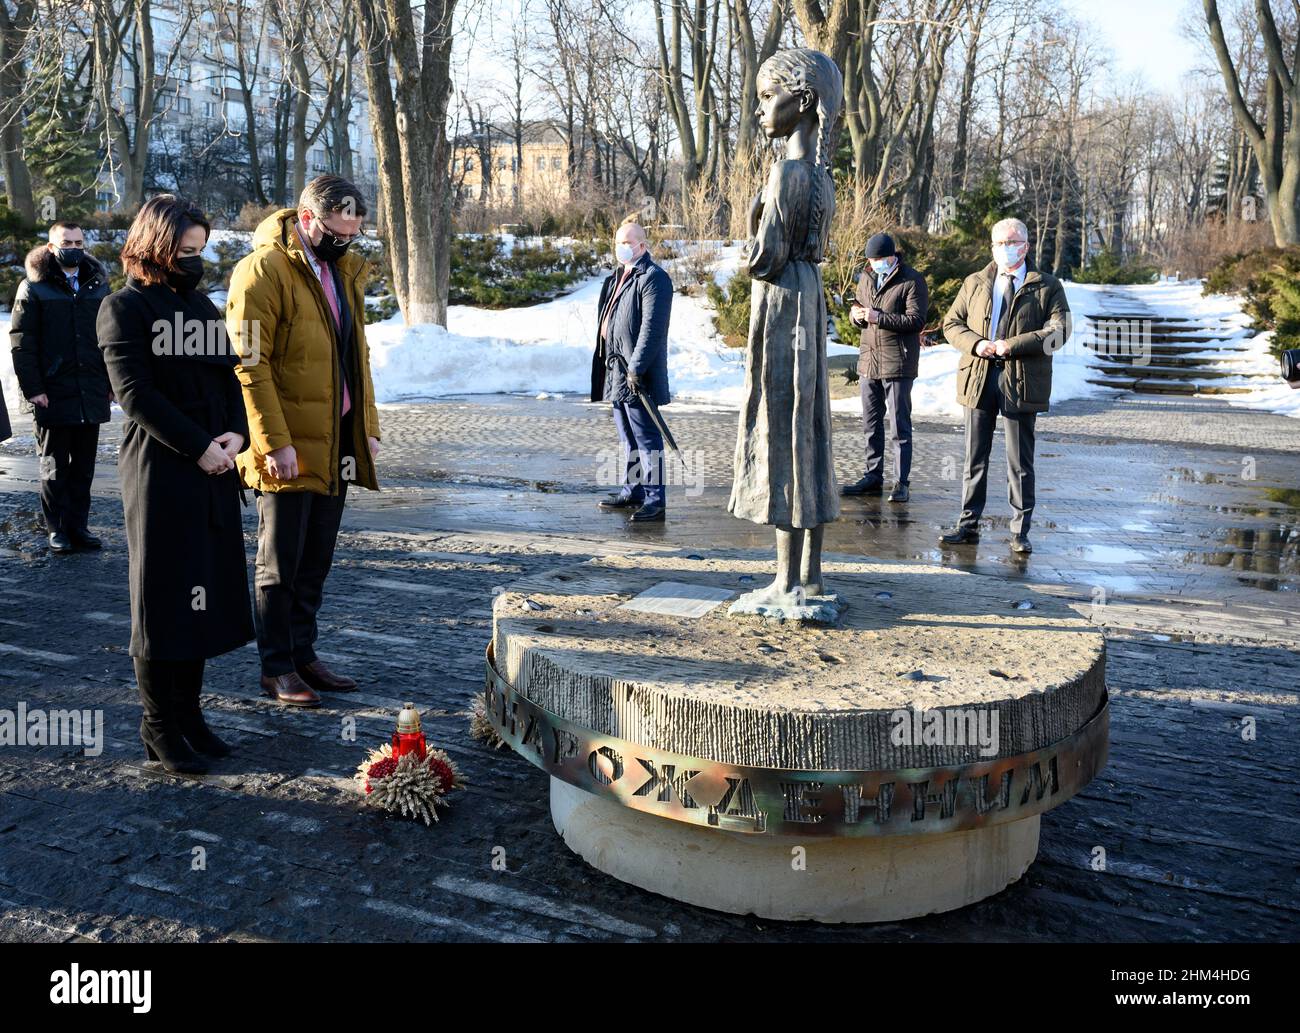 07. Februar 2022, Ukraine, Kiew: Annalena Baerbock (Bündnis 90/die Grünen), Außenministerin, besucht gemeinsam mit Dmytro Kuleba, Außenminister der Ukraine, die Holodomor-Gedenkstätte. Dies erinnert an die bis zu 3,5 Millionen ukrainischen Opfer der Großen Hungersnot (ukrainisch: 'Holodomor') in der kommunistischen Sowjetunion von 1932/33. Durch das Gedenken an die Opfer, die in Sowjetzeiten tabu waren, distanziert sich das Land von der stalinistischen Tyrannei. Die Ukraine strebt die internationale Anerkennung als Völkermord an. Außenminister Baerbock ist zu einem zweitägigen Besuch in der Hauptstadt und der Ostukraine. Foto: Ber Stockfoto